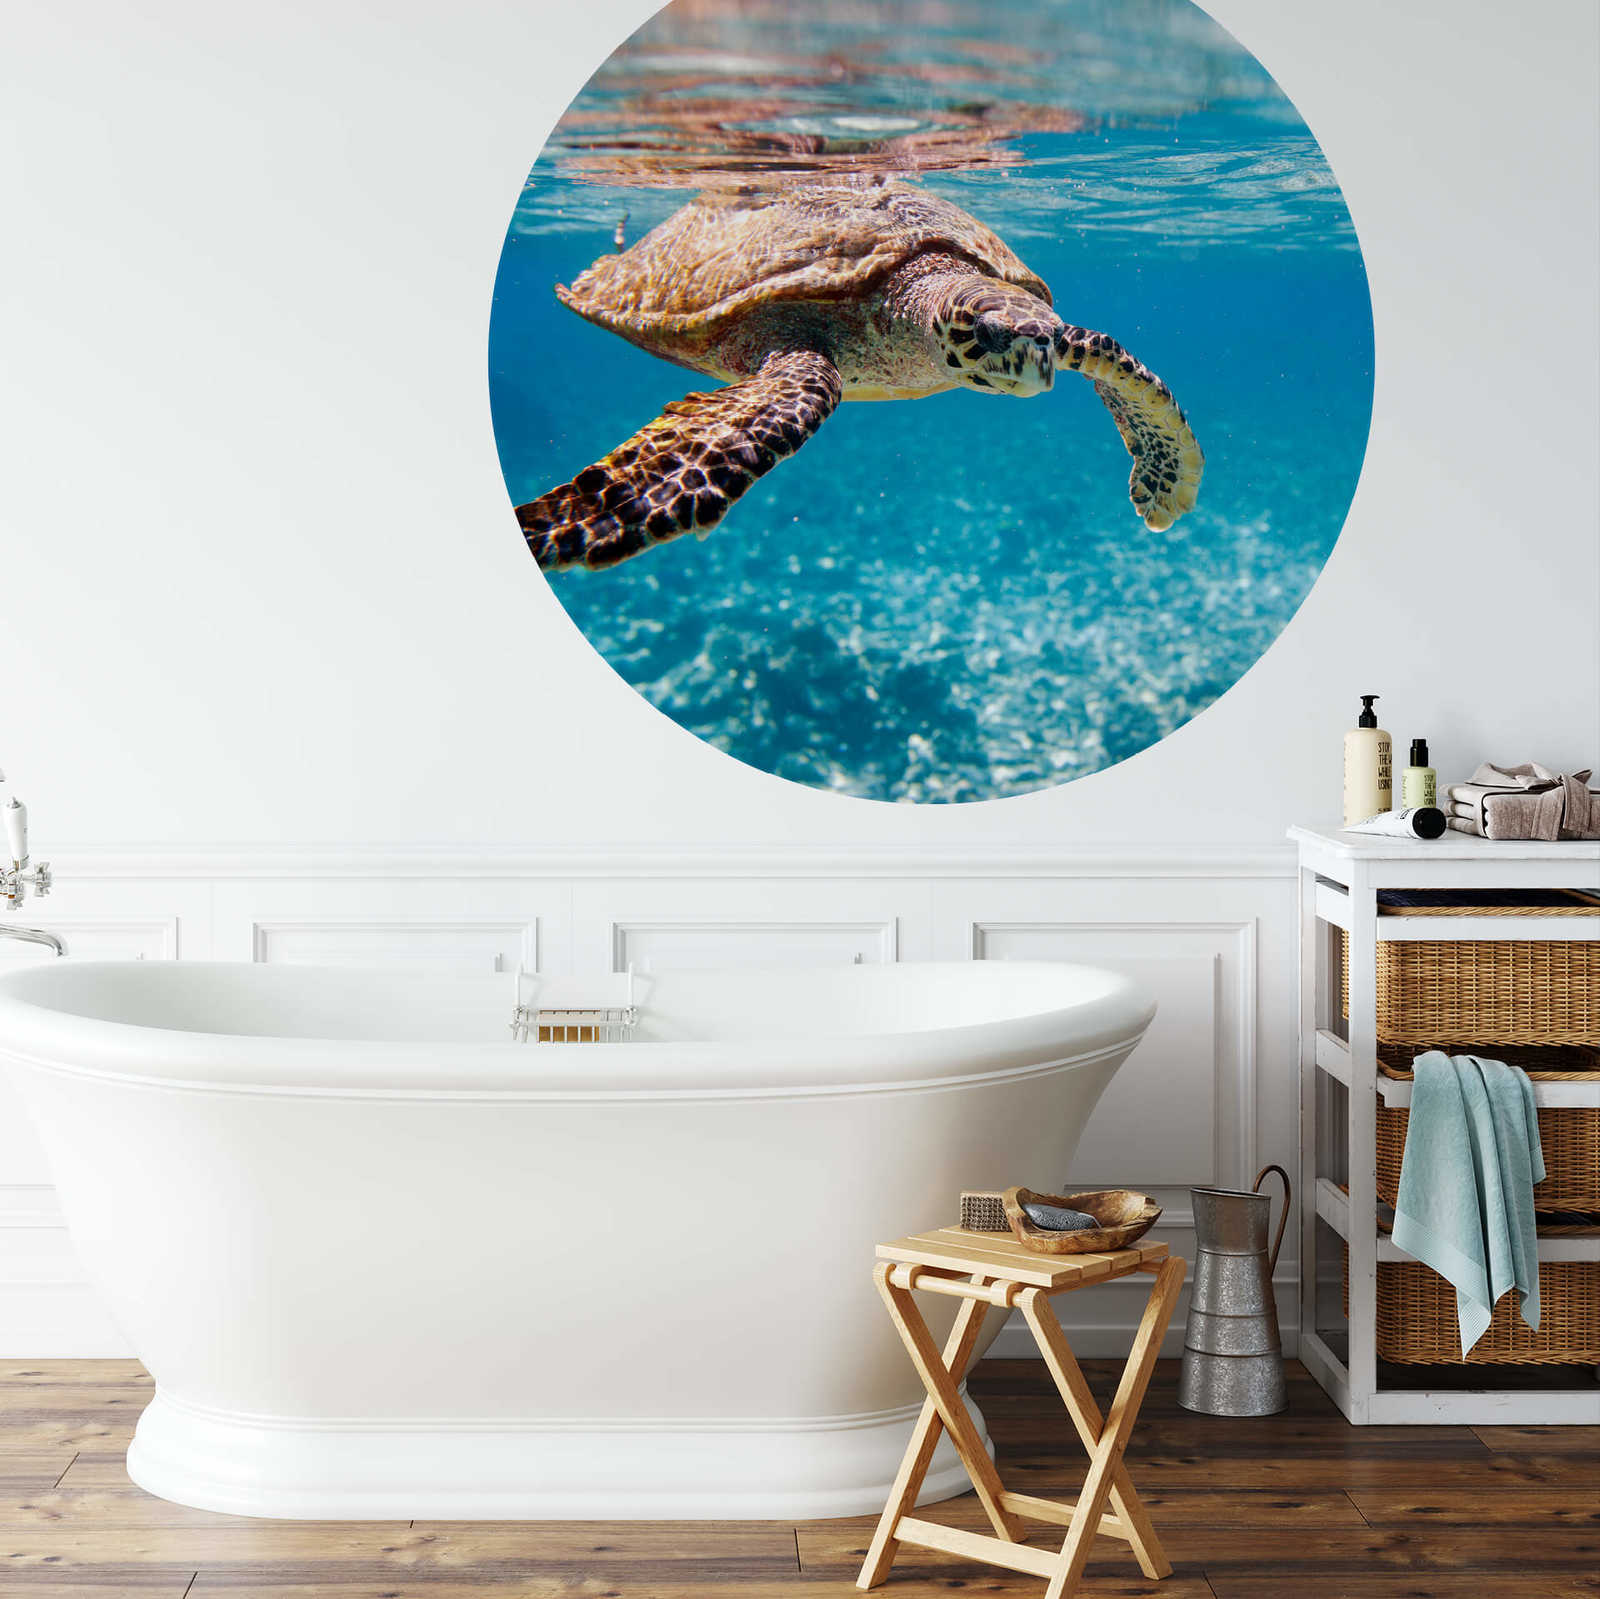             Photo wallpaper round turtle under water
        